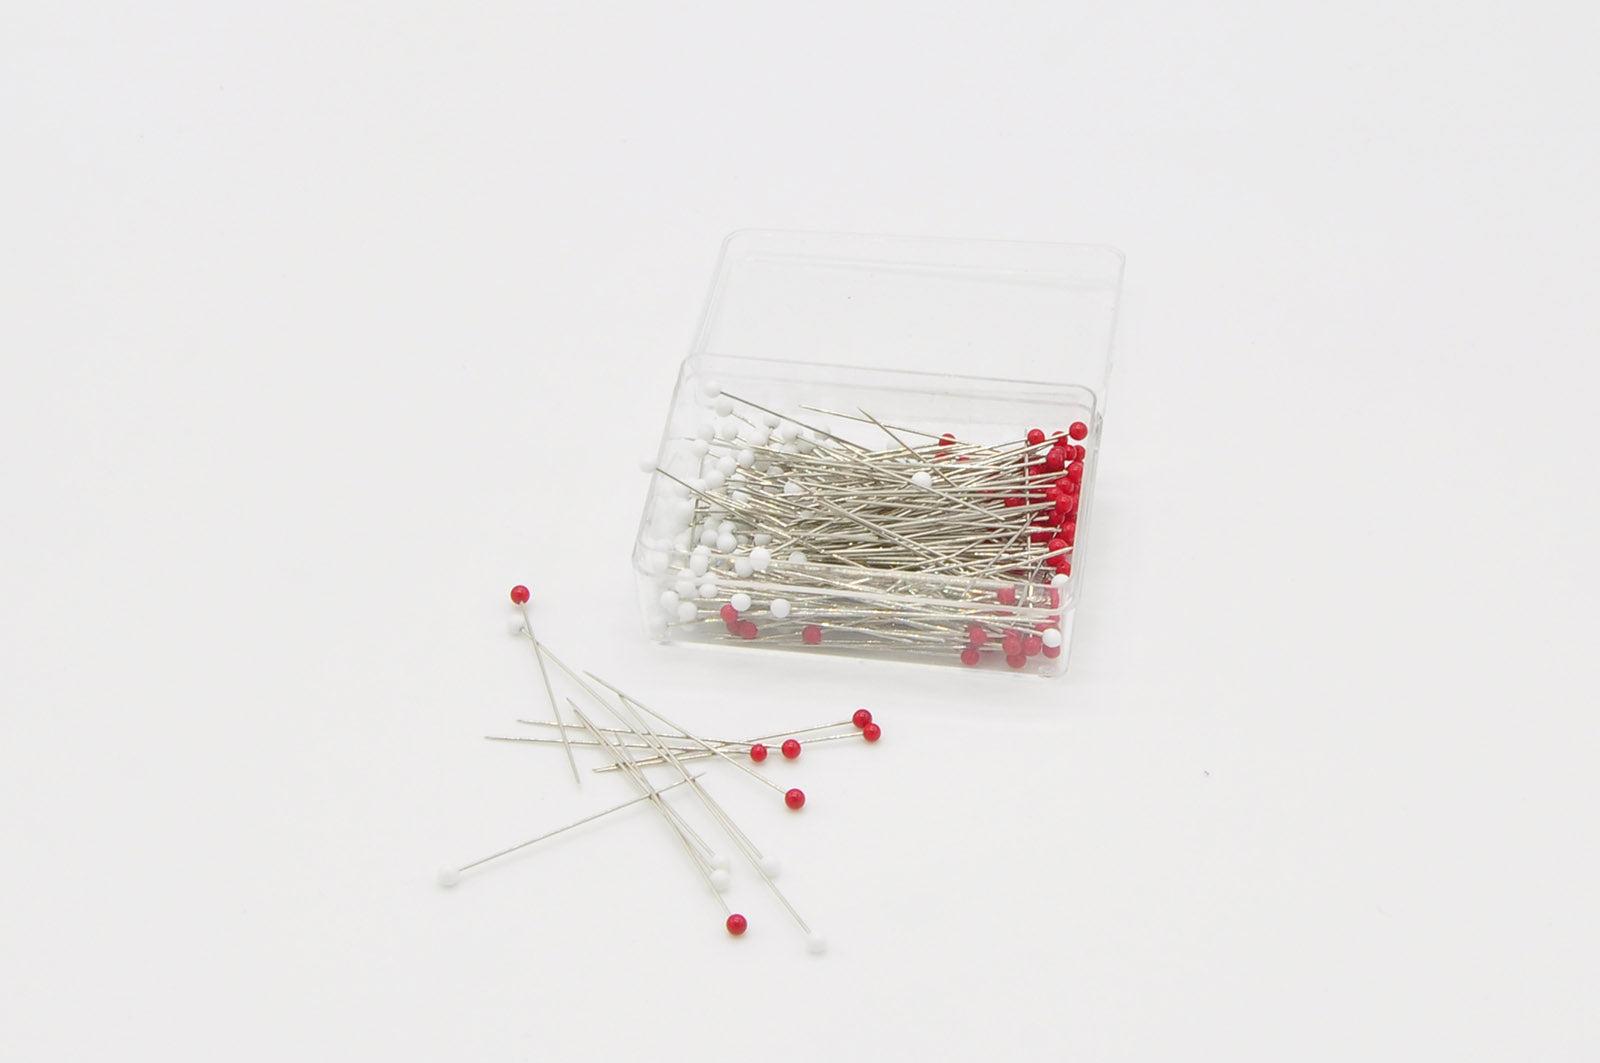 Sewing Pins & Pin Magnets - Annie's 1 3/8 IBC Glass Head Silk Pins